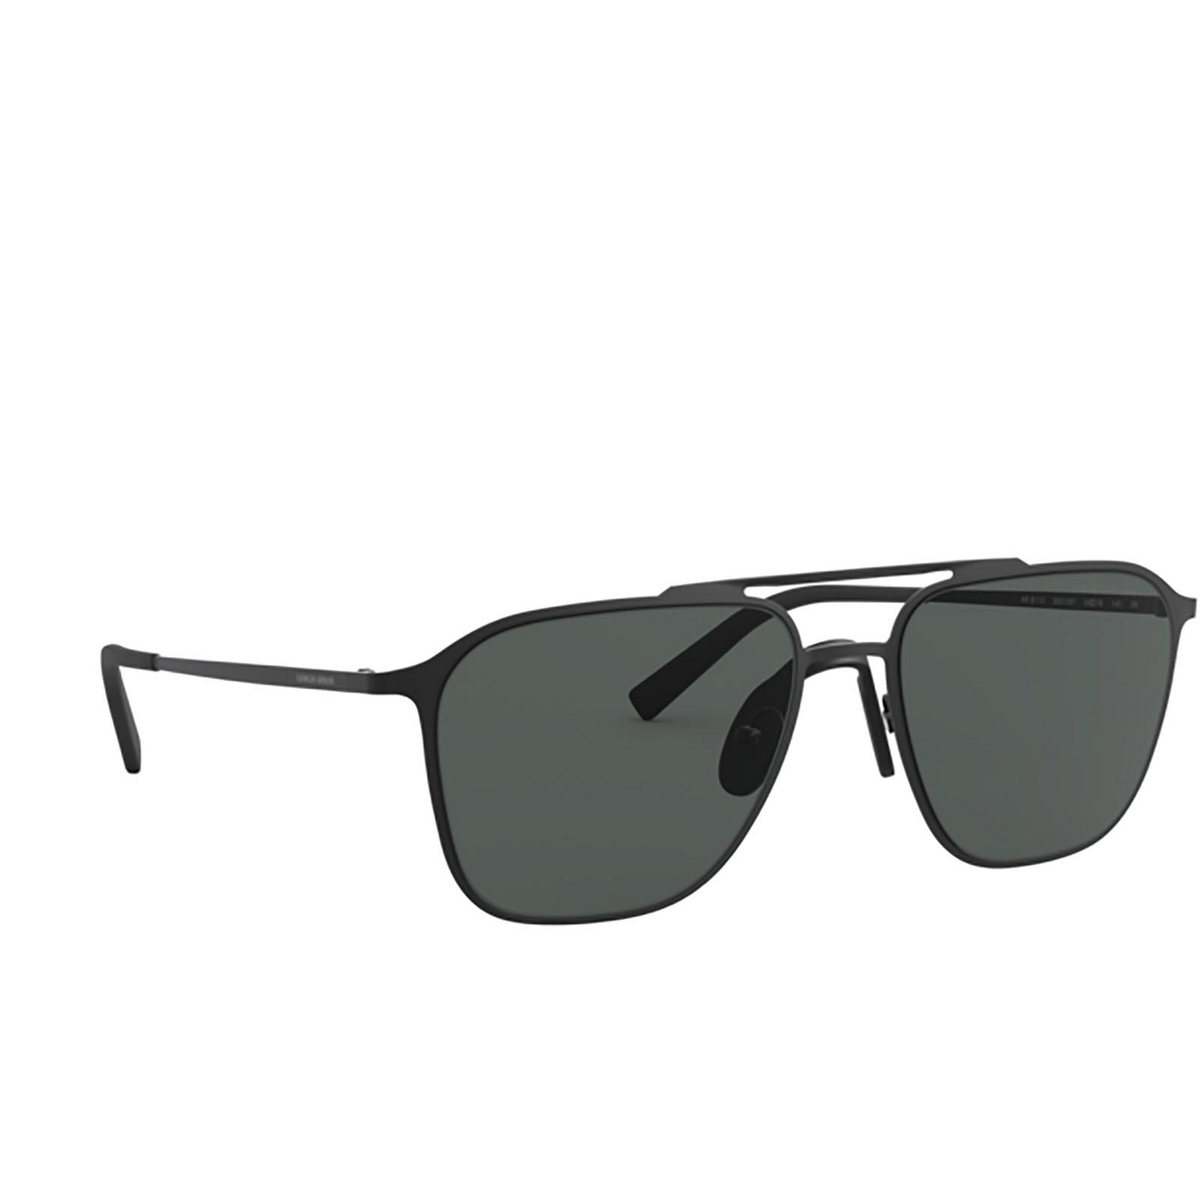 Giorgio Armani® Square Sunglasses: AR6110 color Matte Black 300187 - three-quarters view.